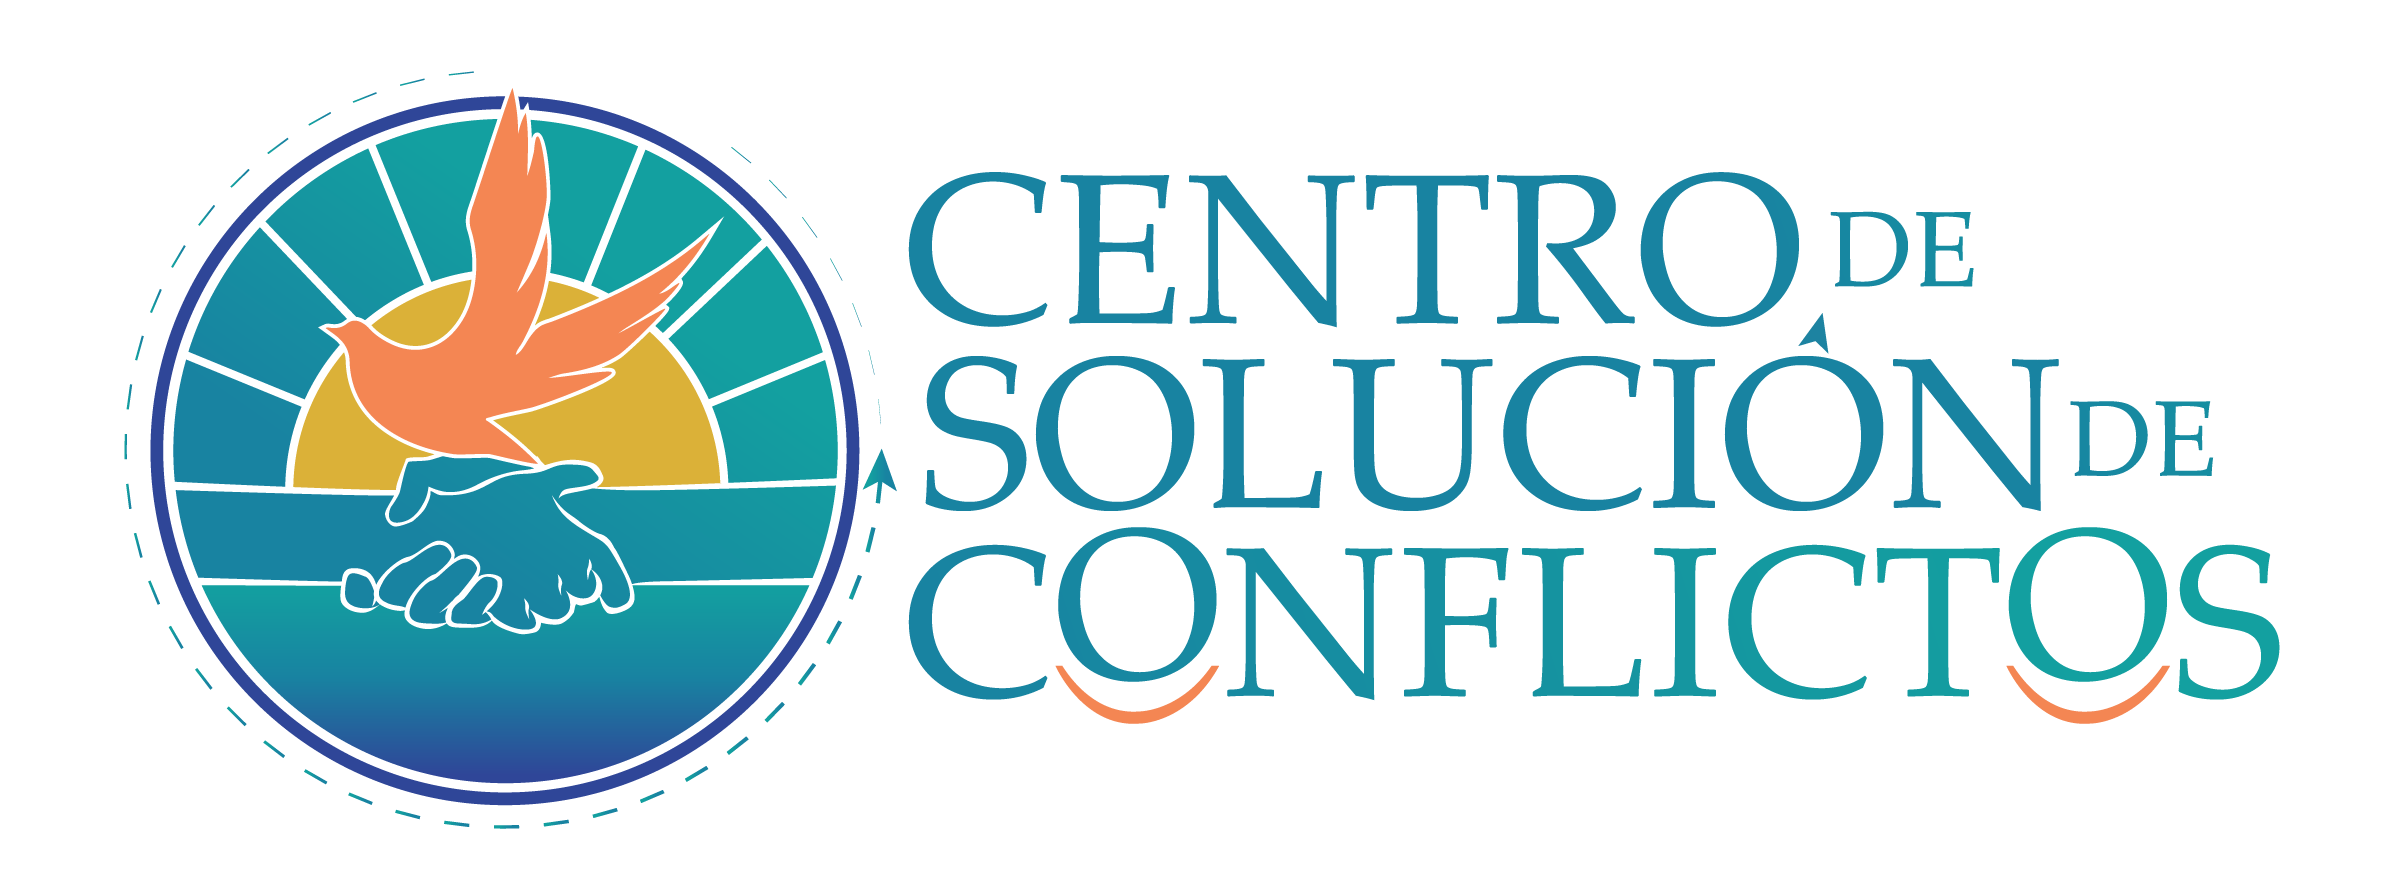 Centro de Soluciones de Conflictos